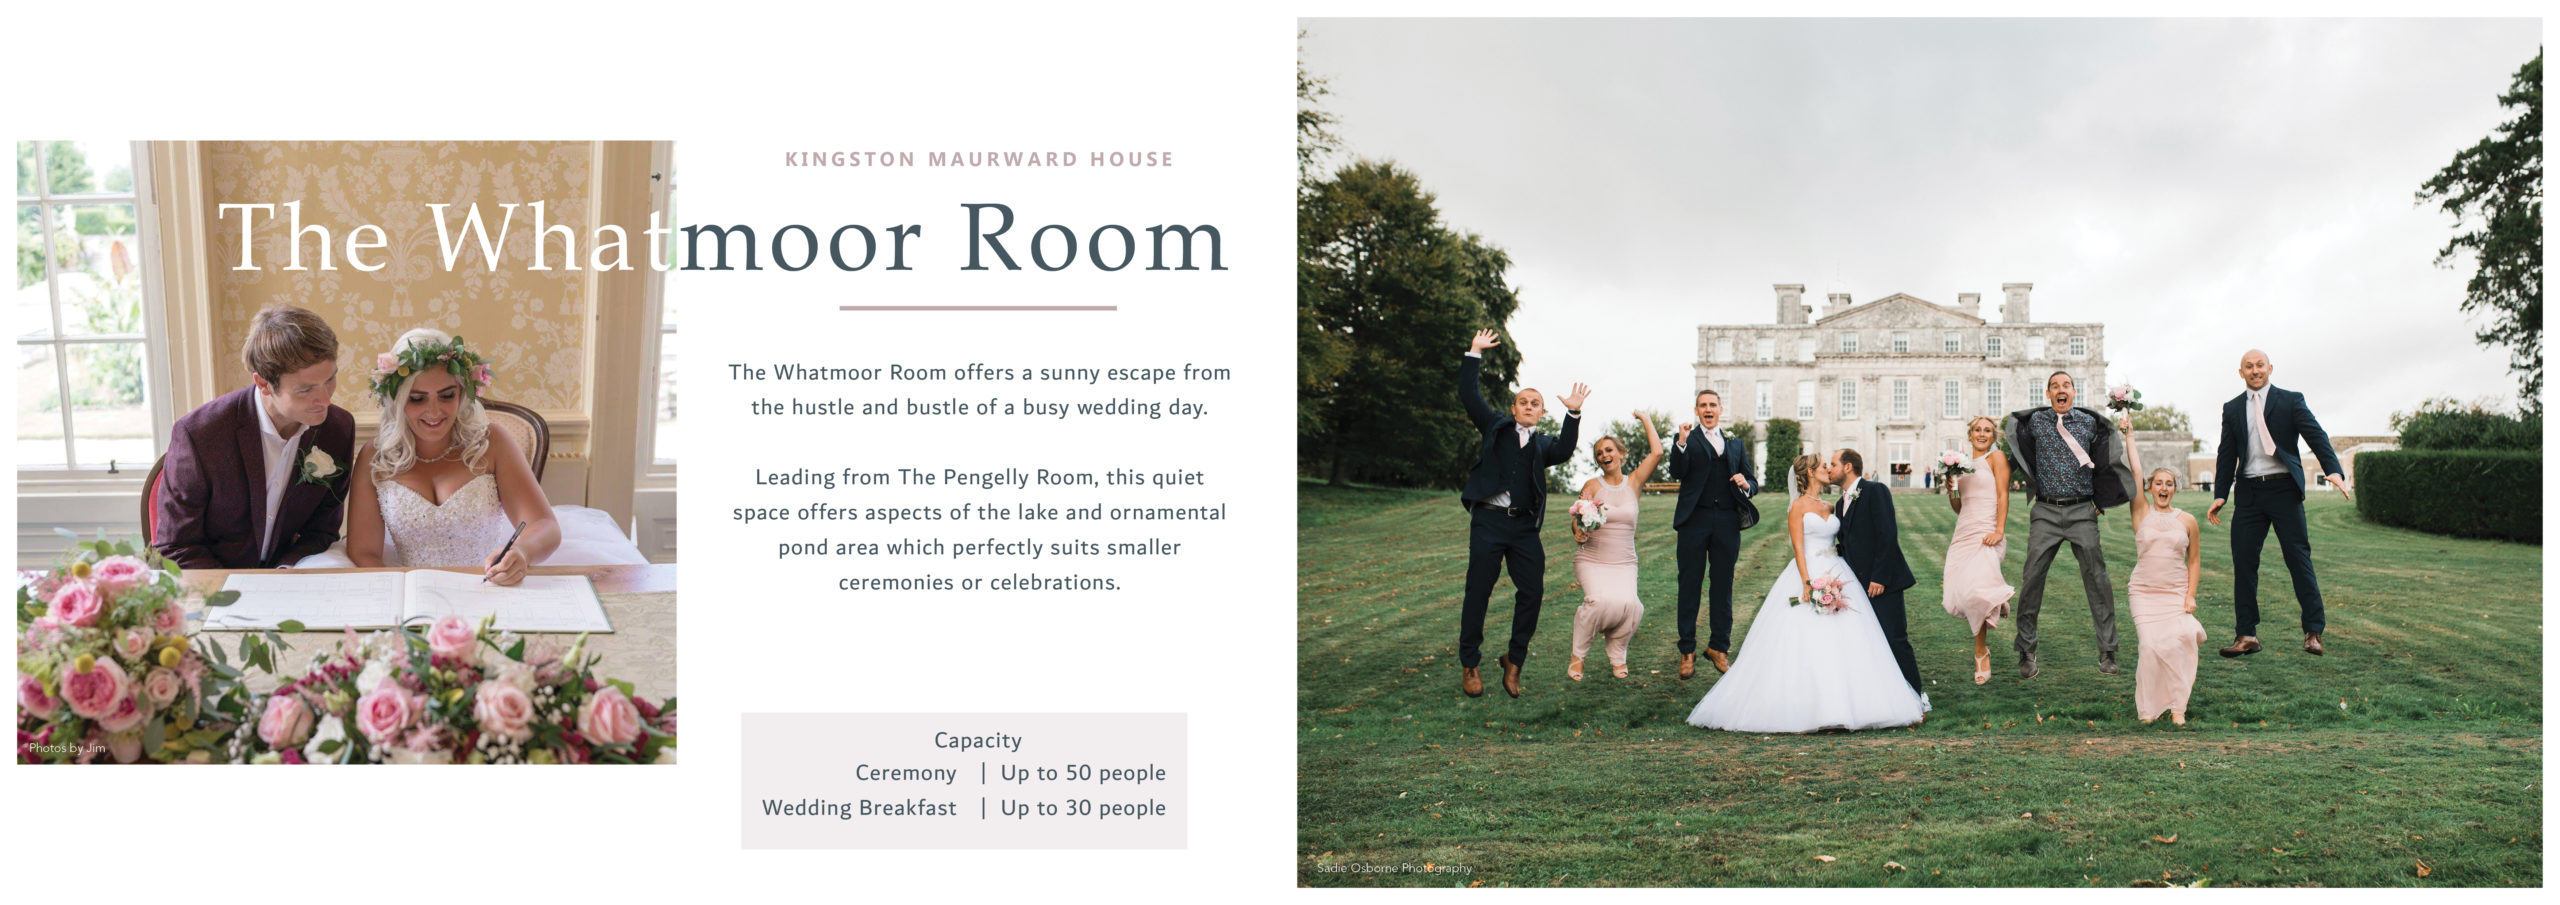 Whatmoor Room brochure spreads